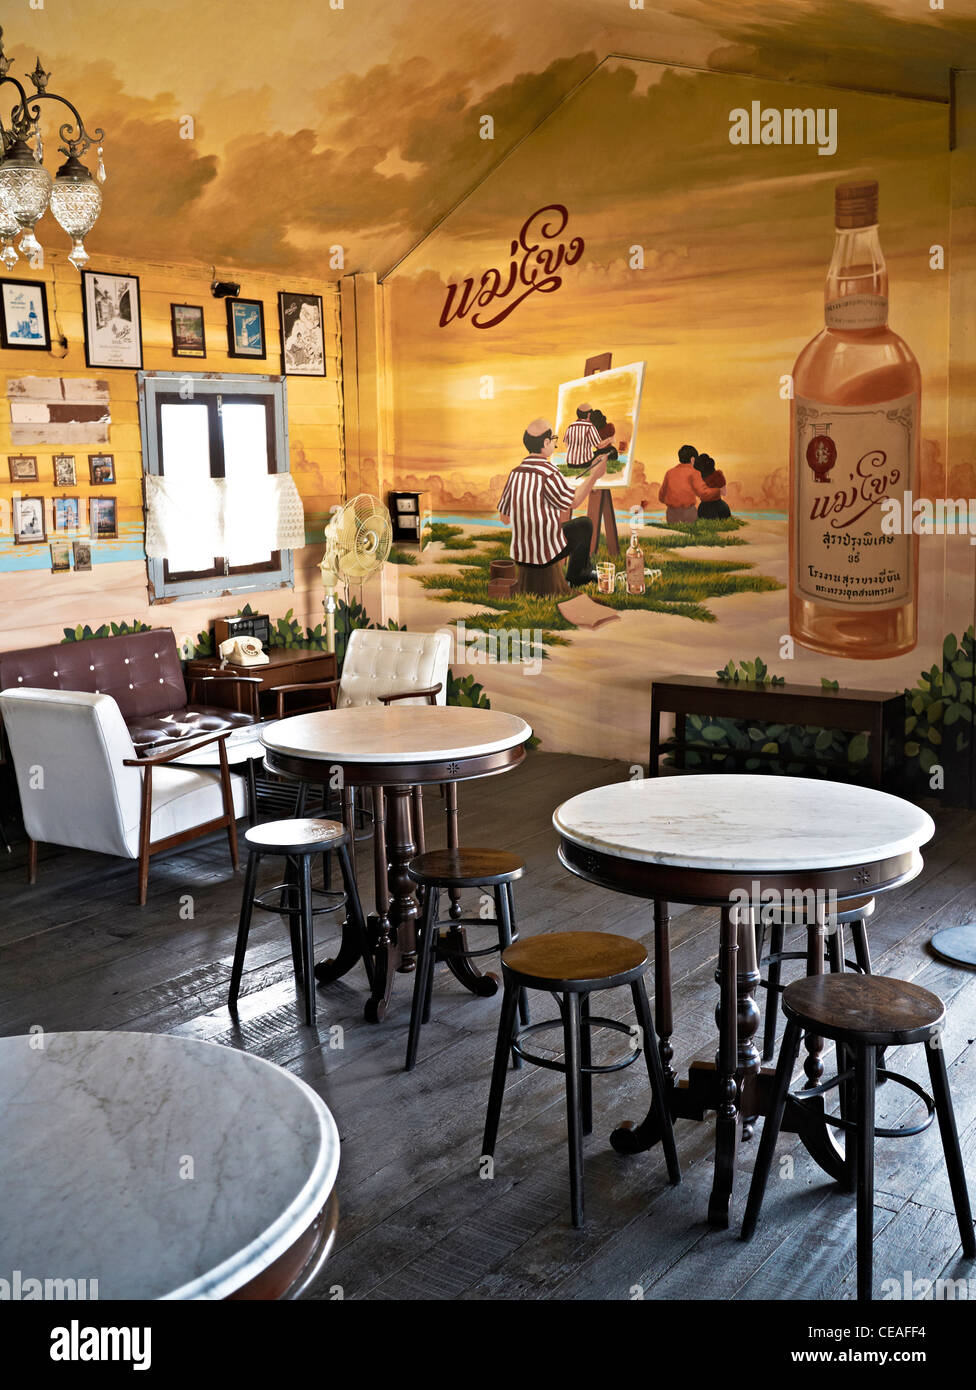 Bar de vinos retro y restaurante de estilo vintage con decoración y  mobiliario interior estilo años 1950 Fotografía de stock - Alamy